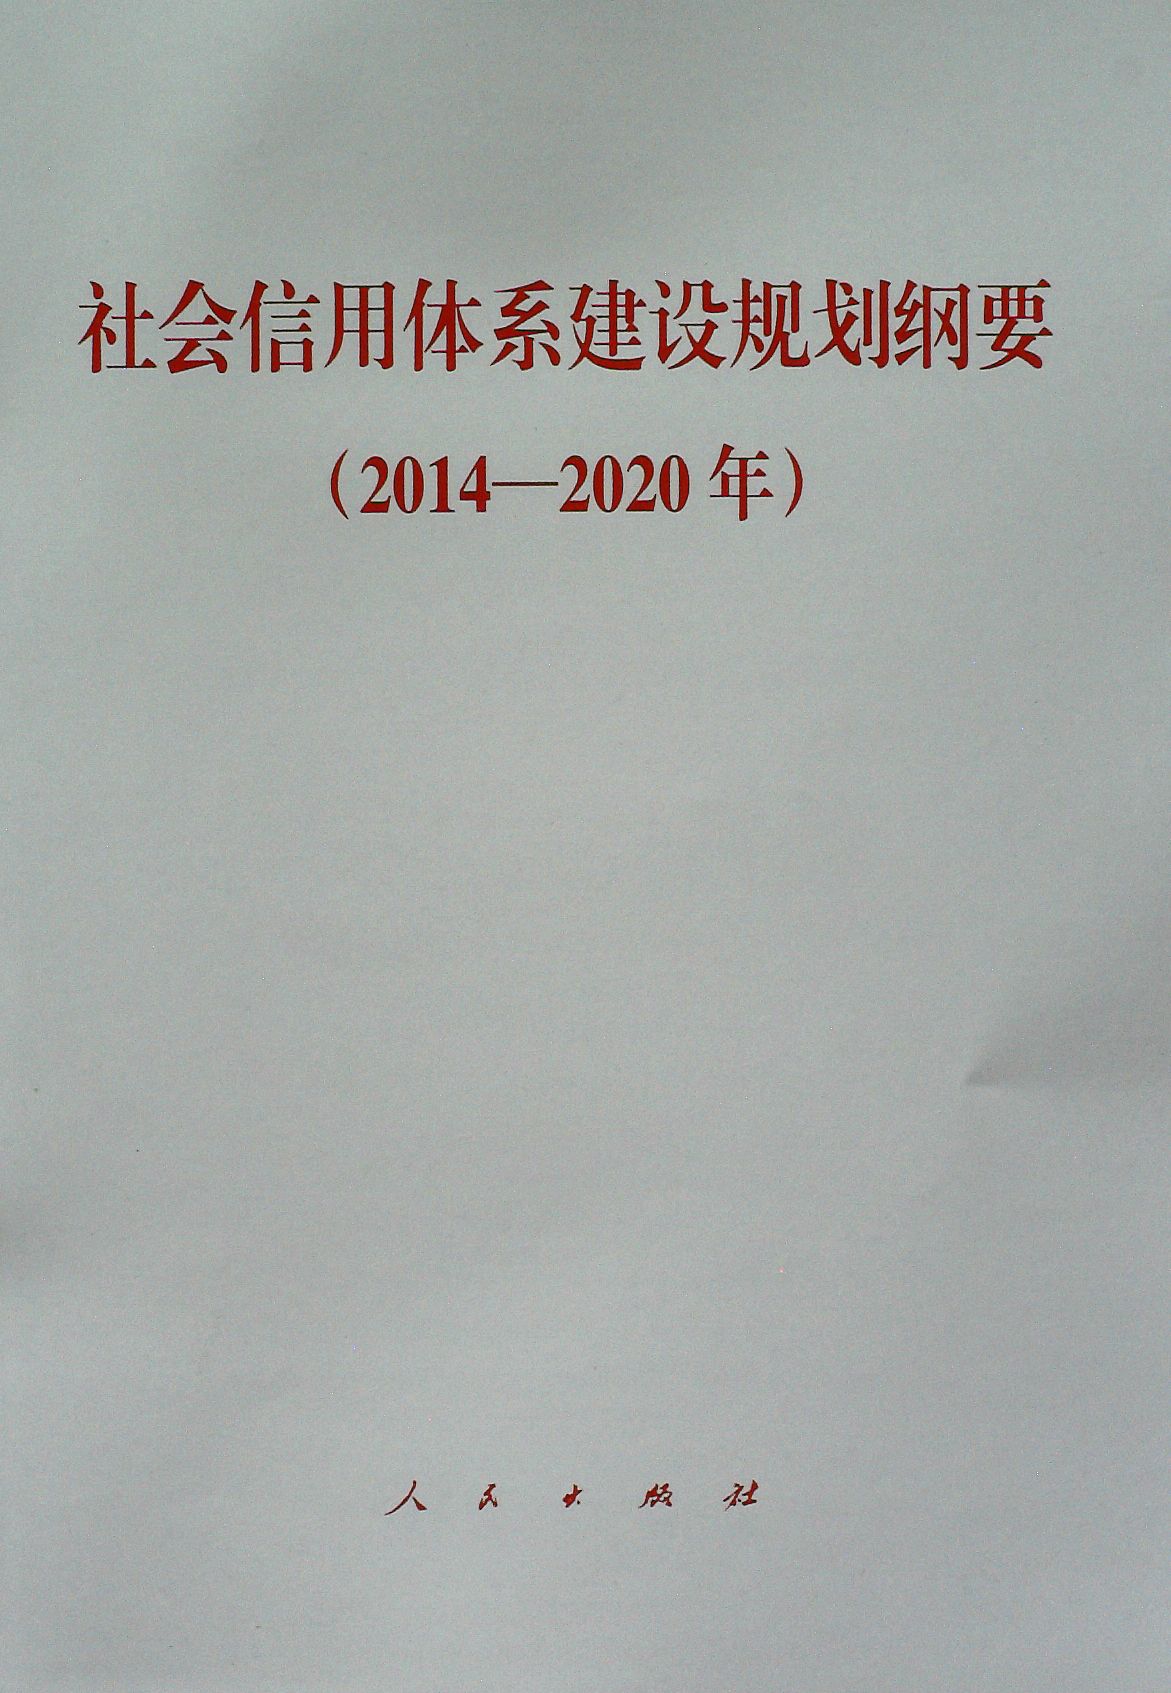 社會信用體系建設規劃綱要（2014—2020年）